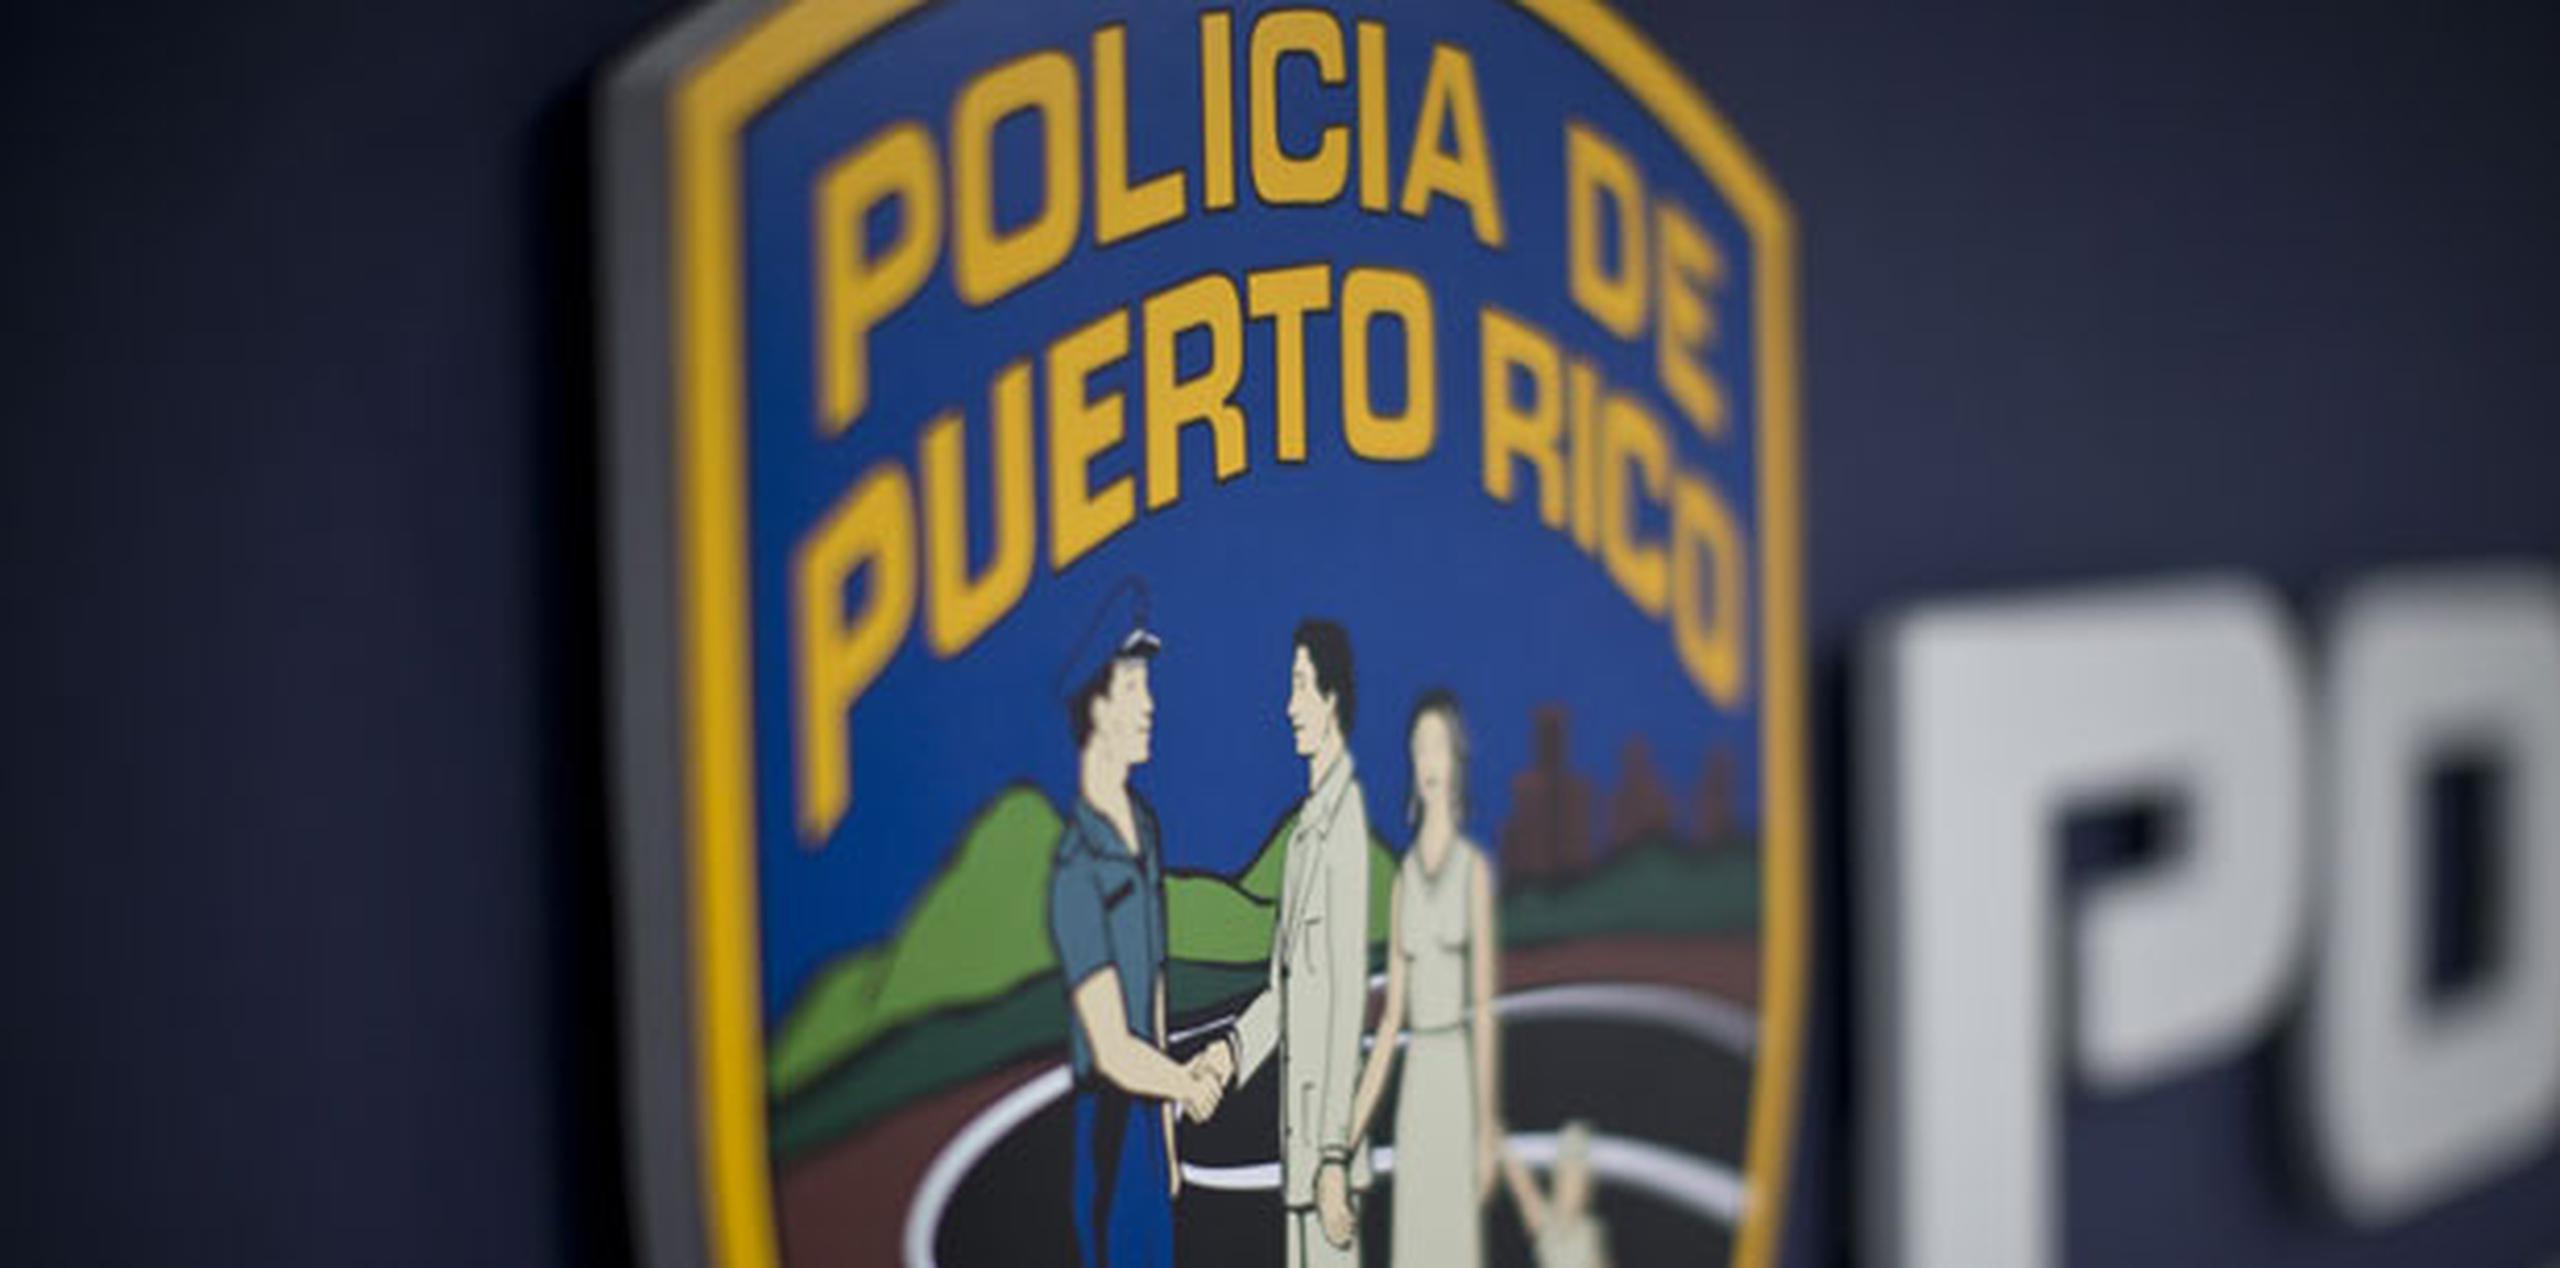 La intervención fue realizada por el sargento Héctor M. Vélez Rodríguez, adscrito a la División de Drogas del área de San Juan. (Archivo)